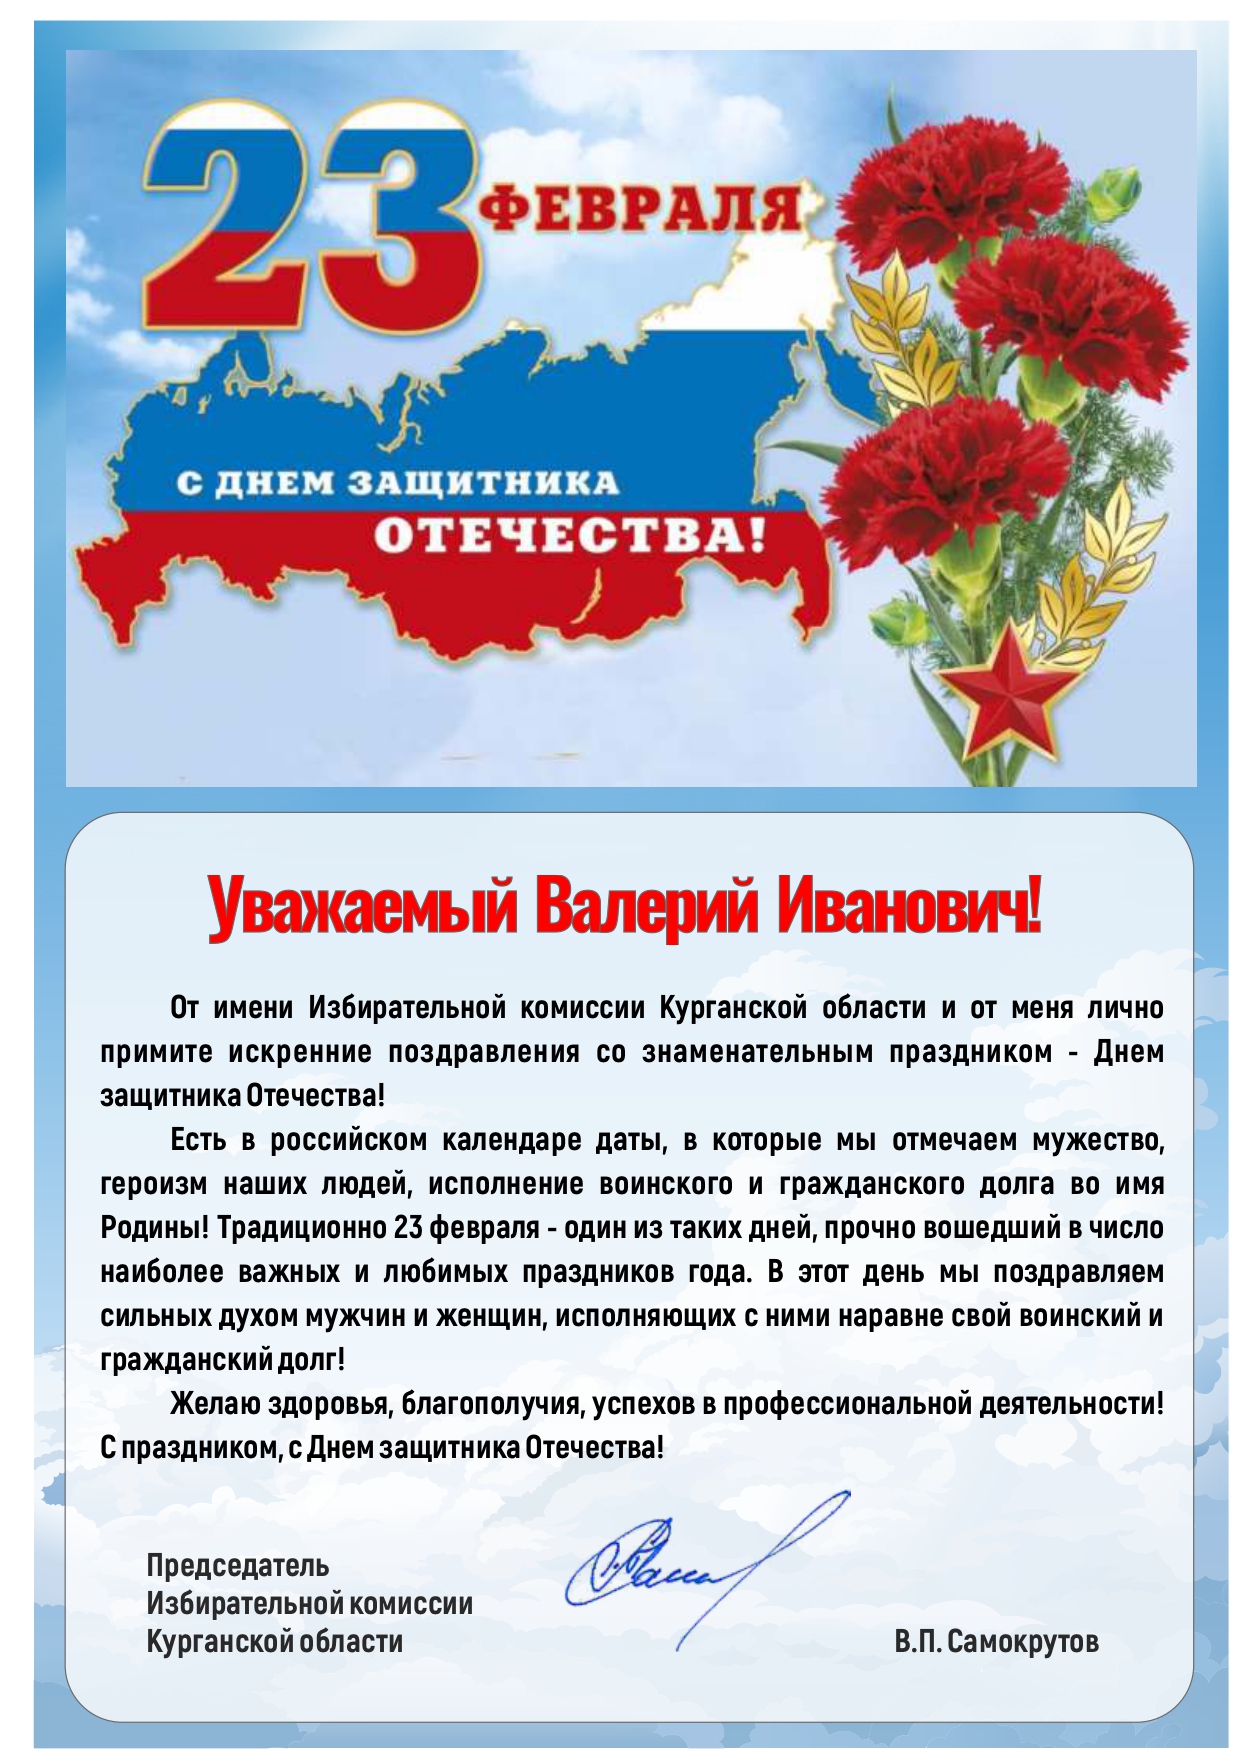 30-летие избирательной системы России «Я – за Россию!»